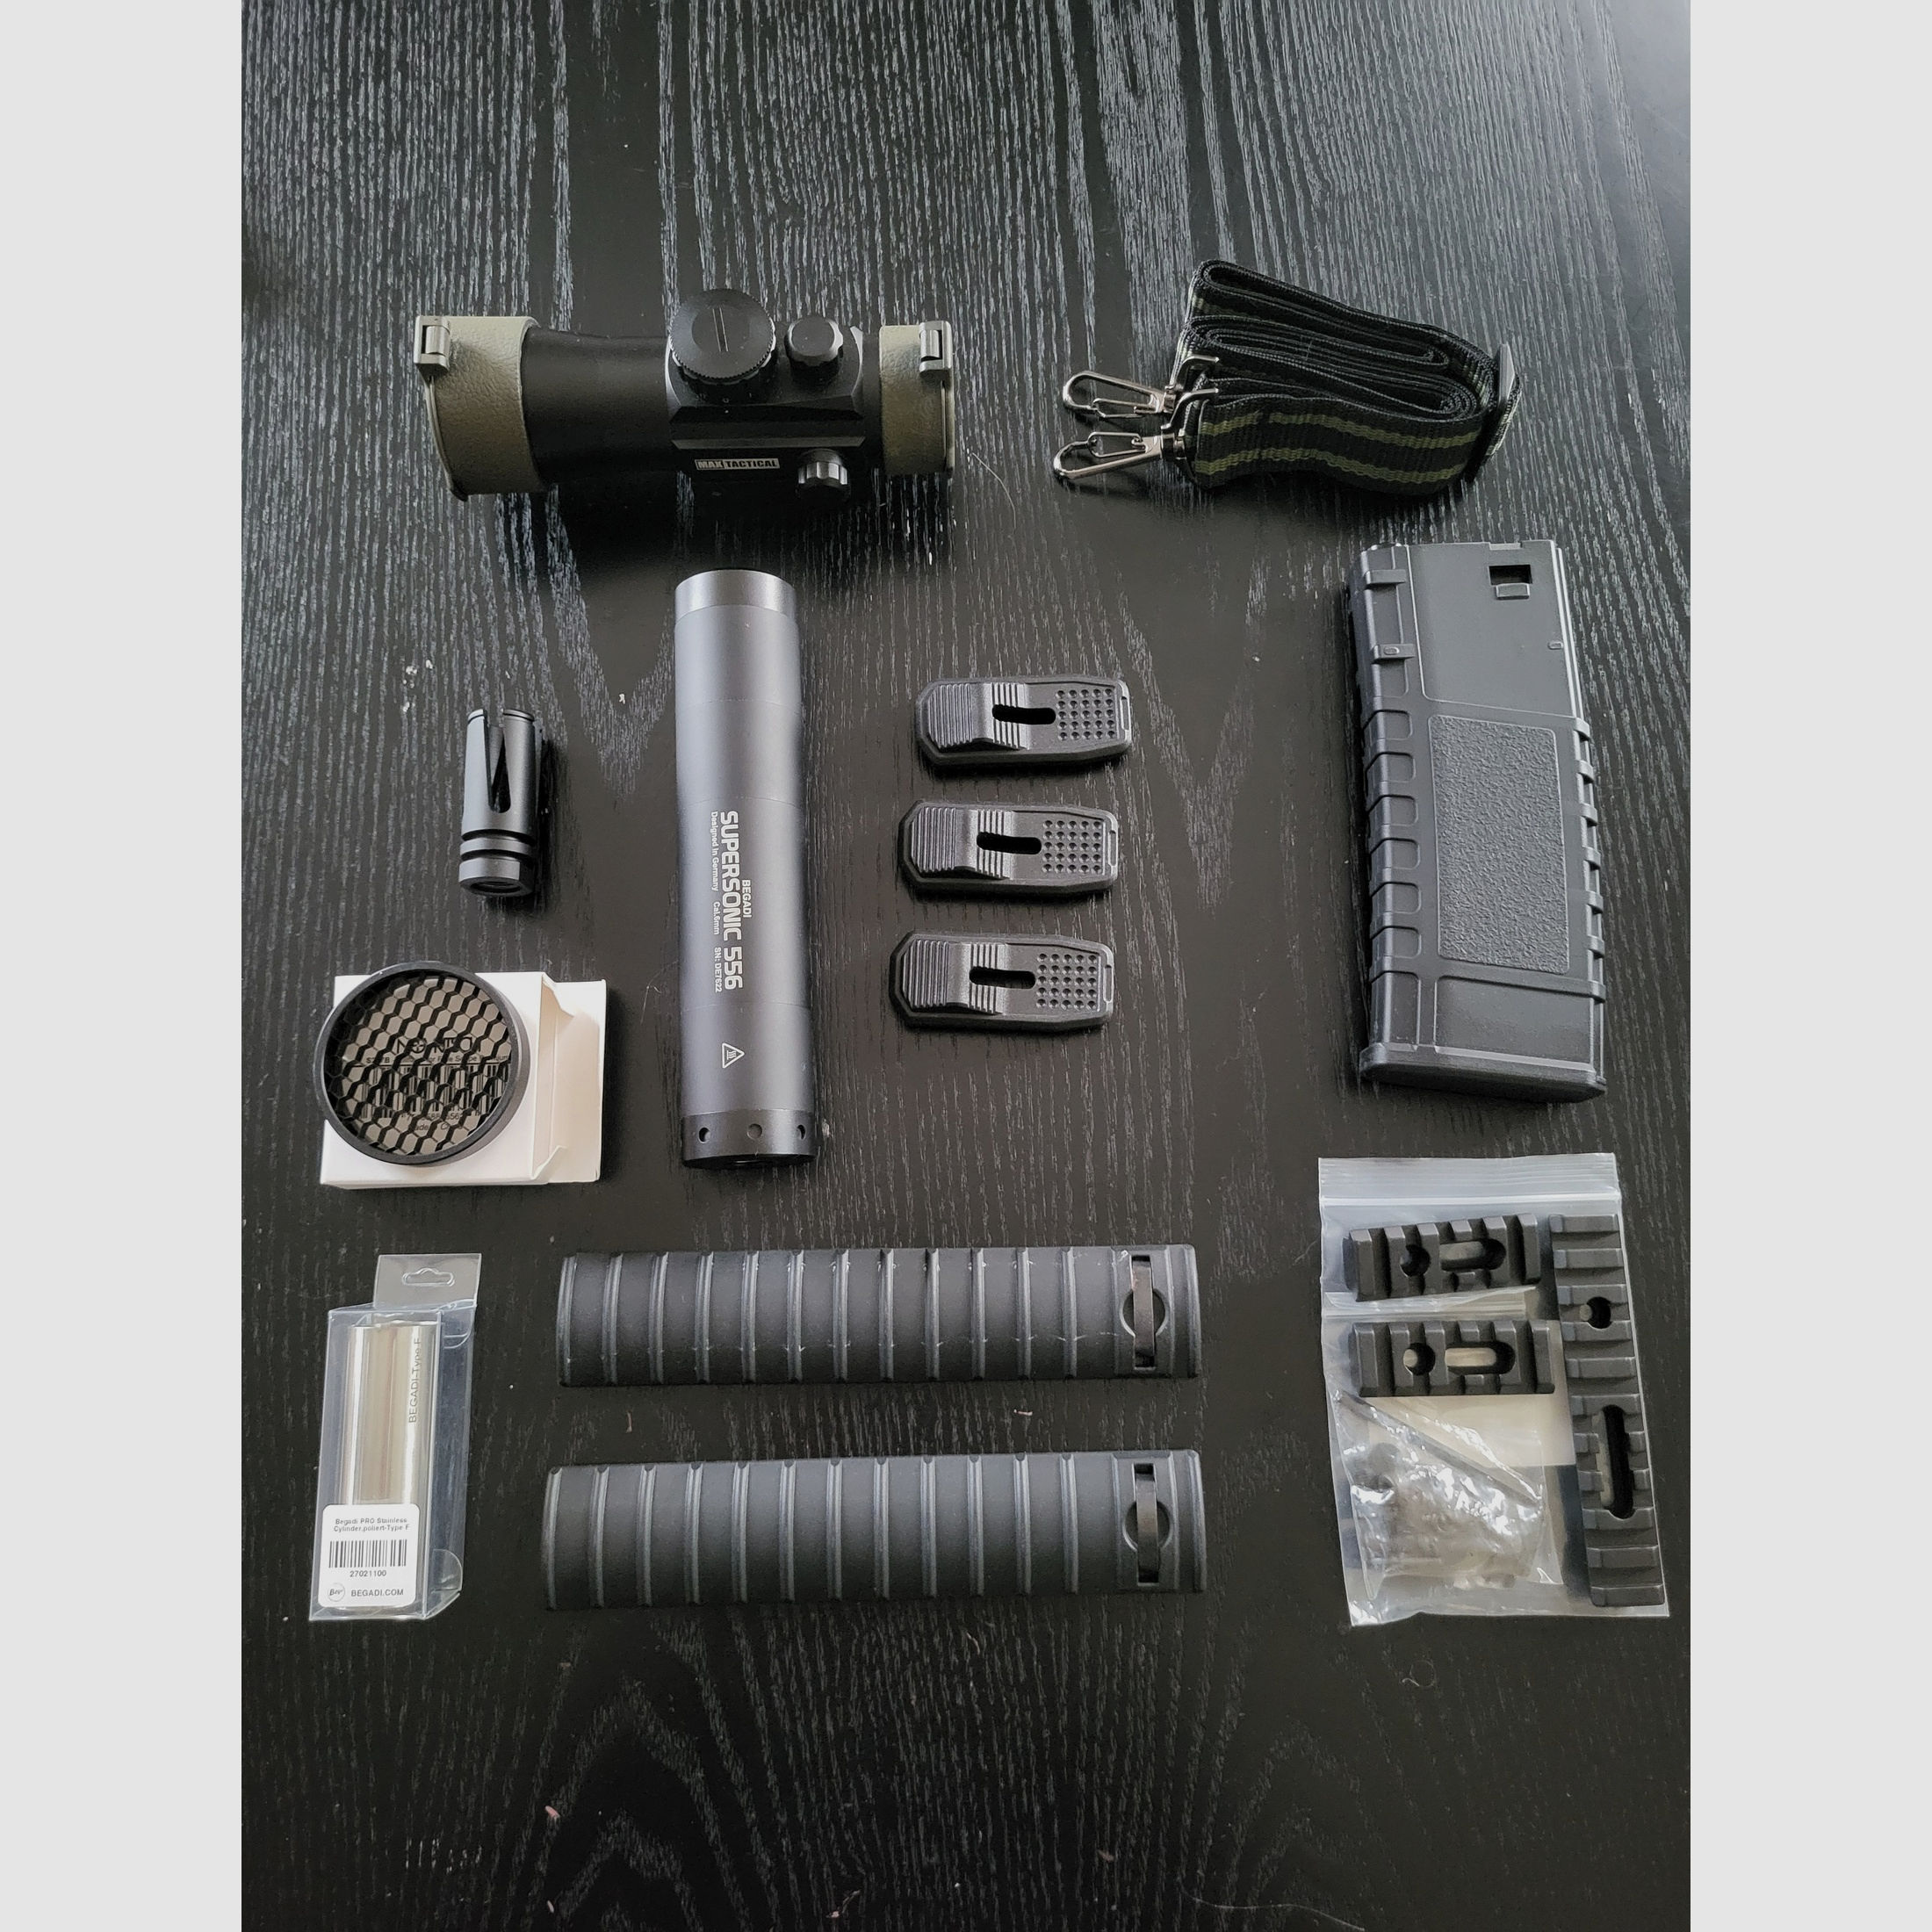 Airsoft Accessories / Parts (Reddot, Rails, schalldämpfer,...)